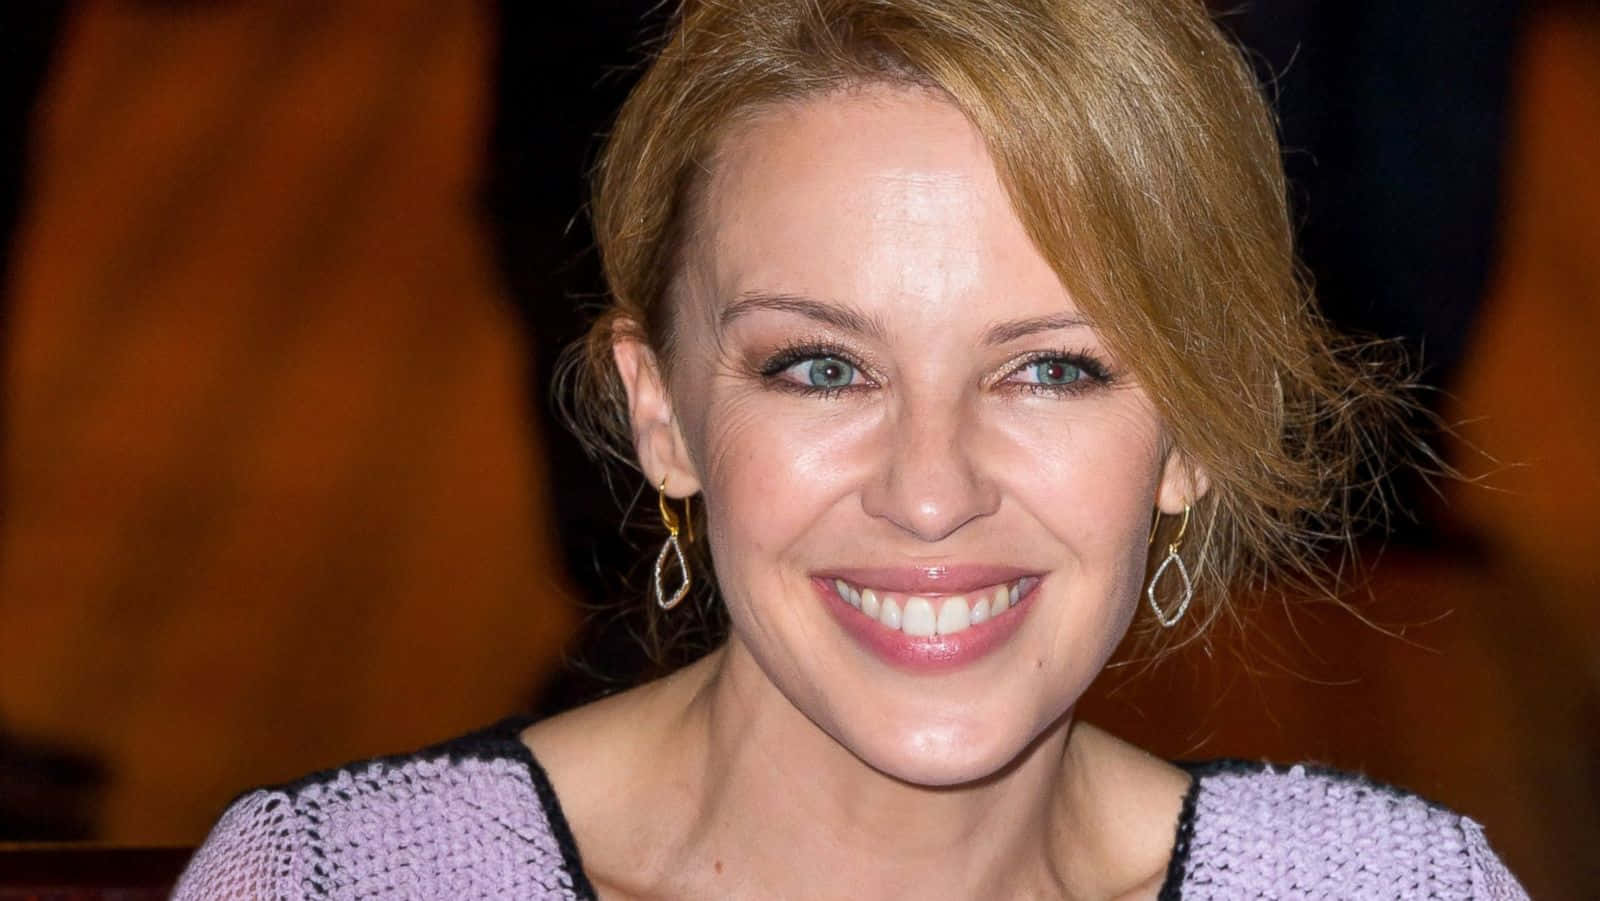 Kylie Minogue Smiling Portrait Wallpaper